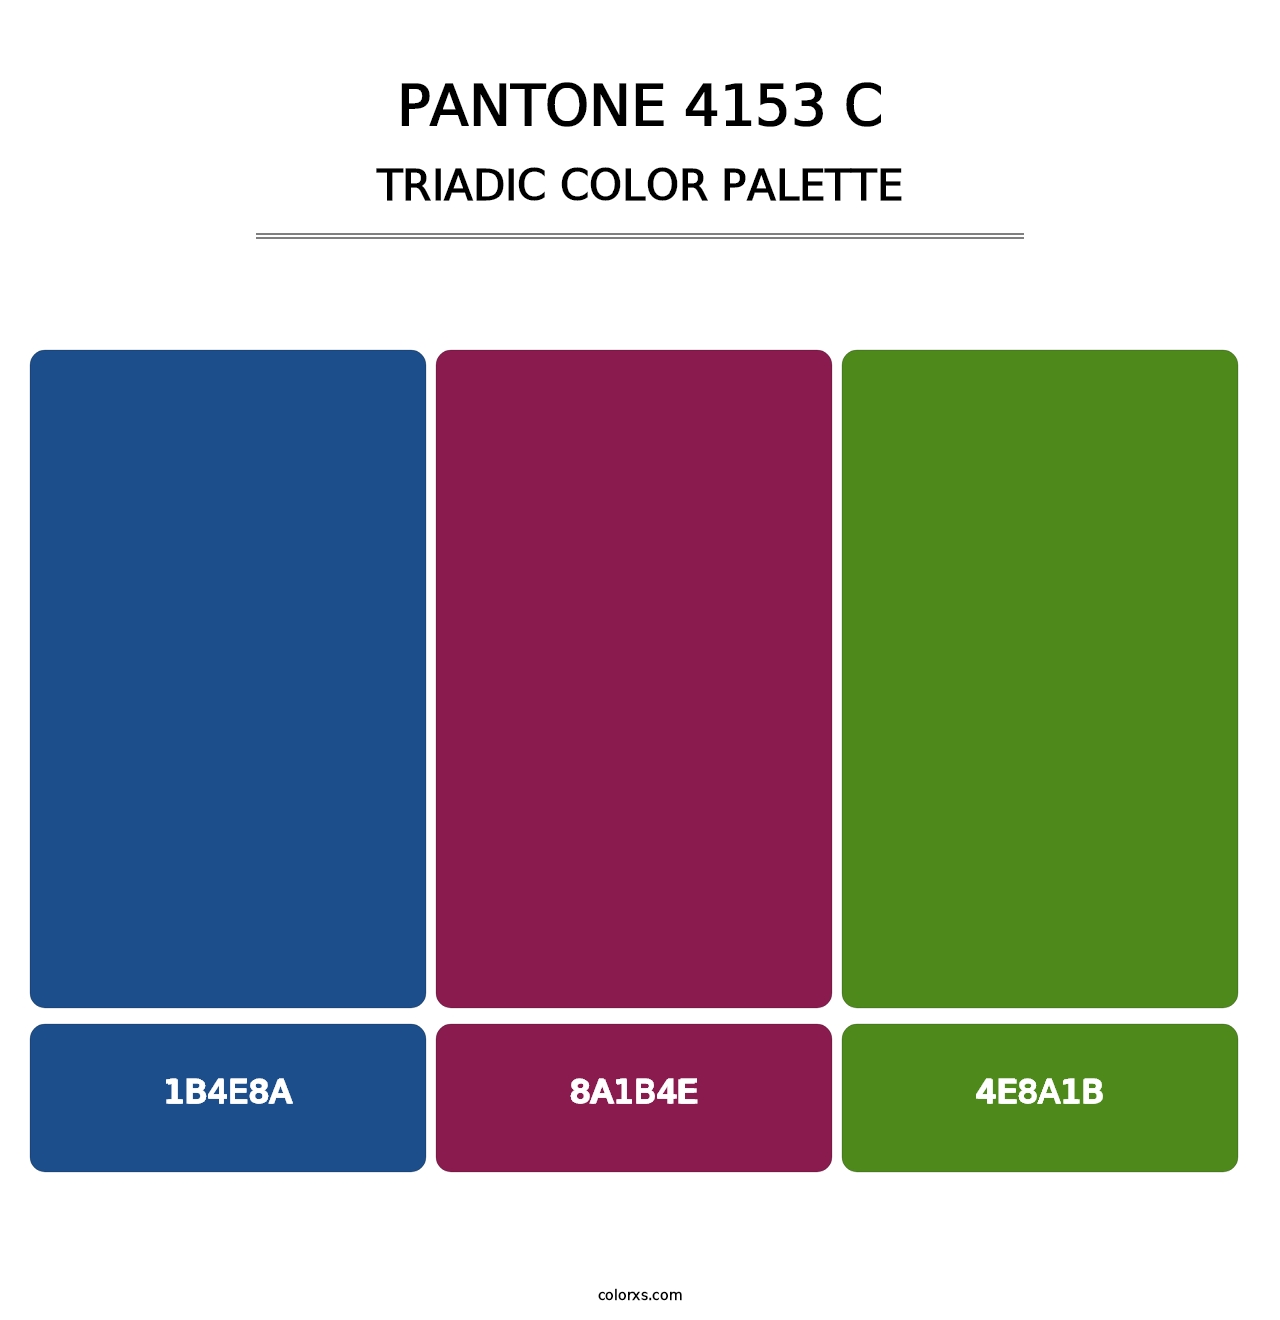 PANTONE 4153 C - Triadic Color Palette